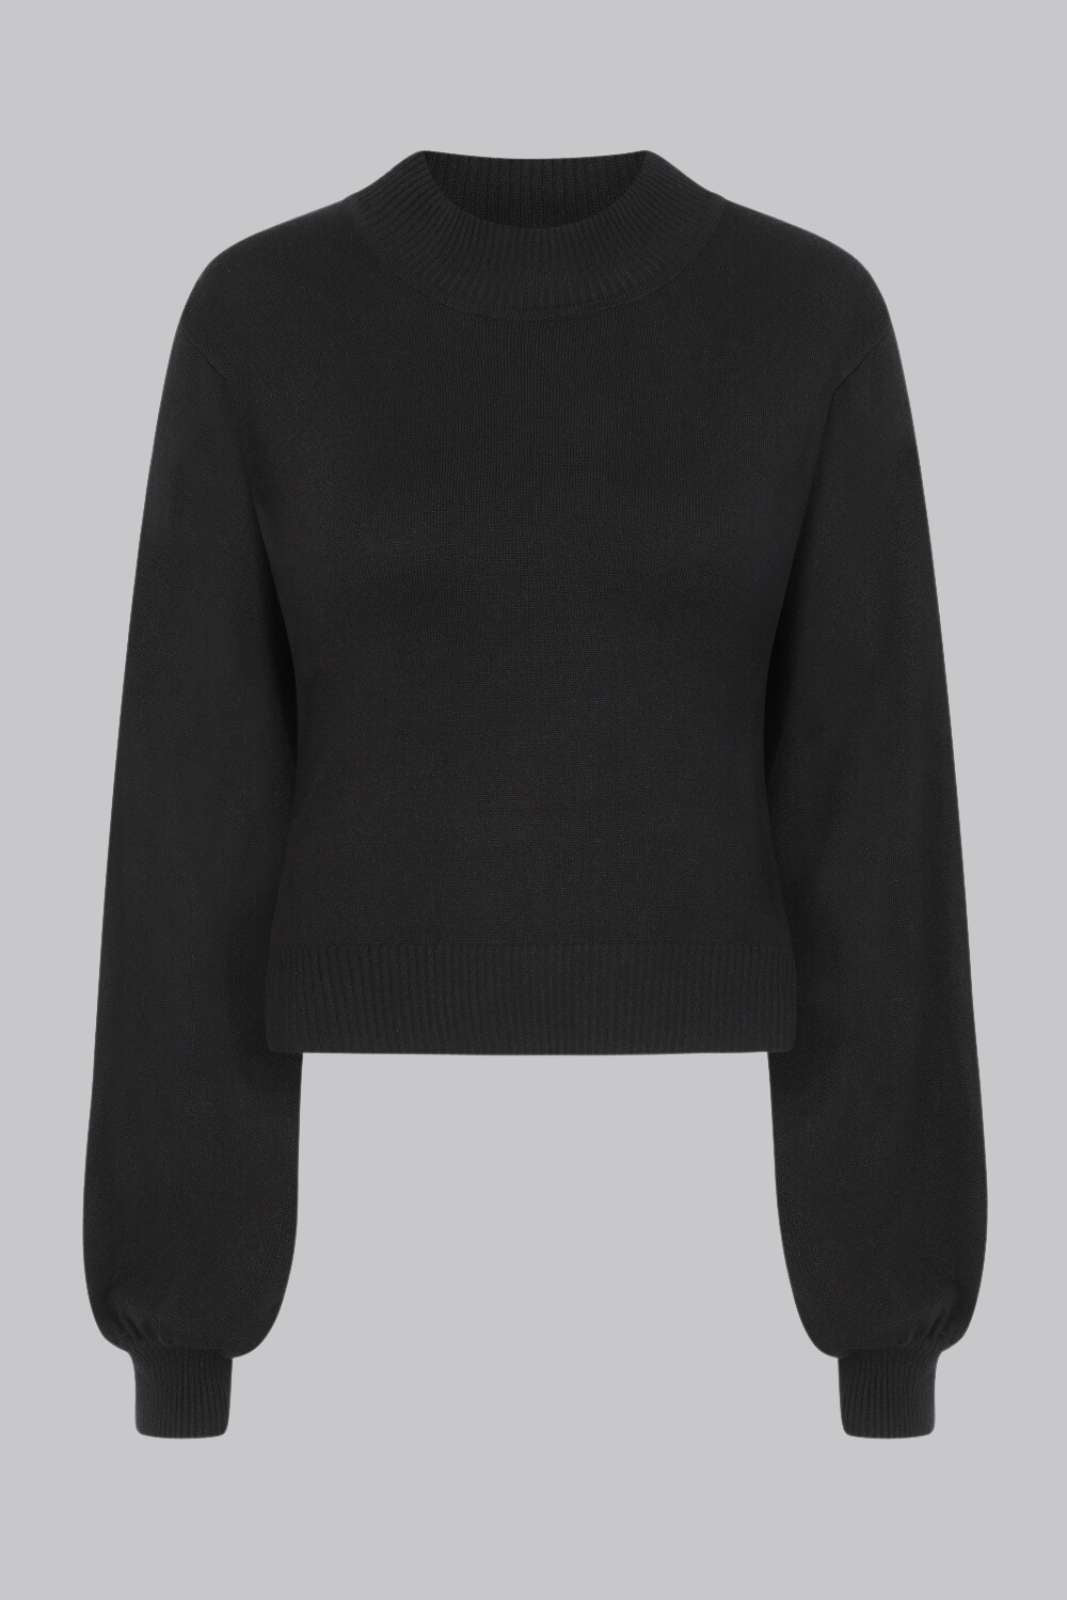 Black Balloon Sleeve Sweater